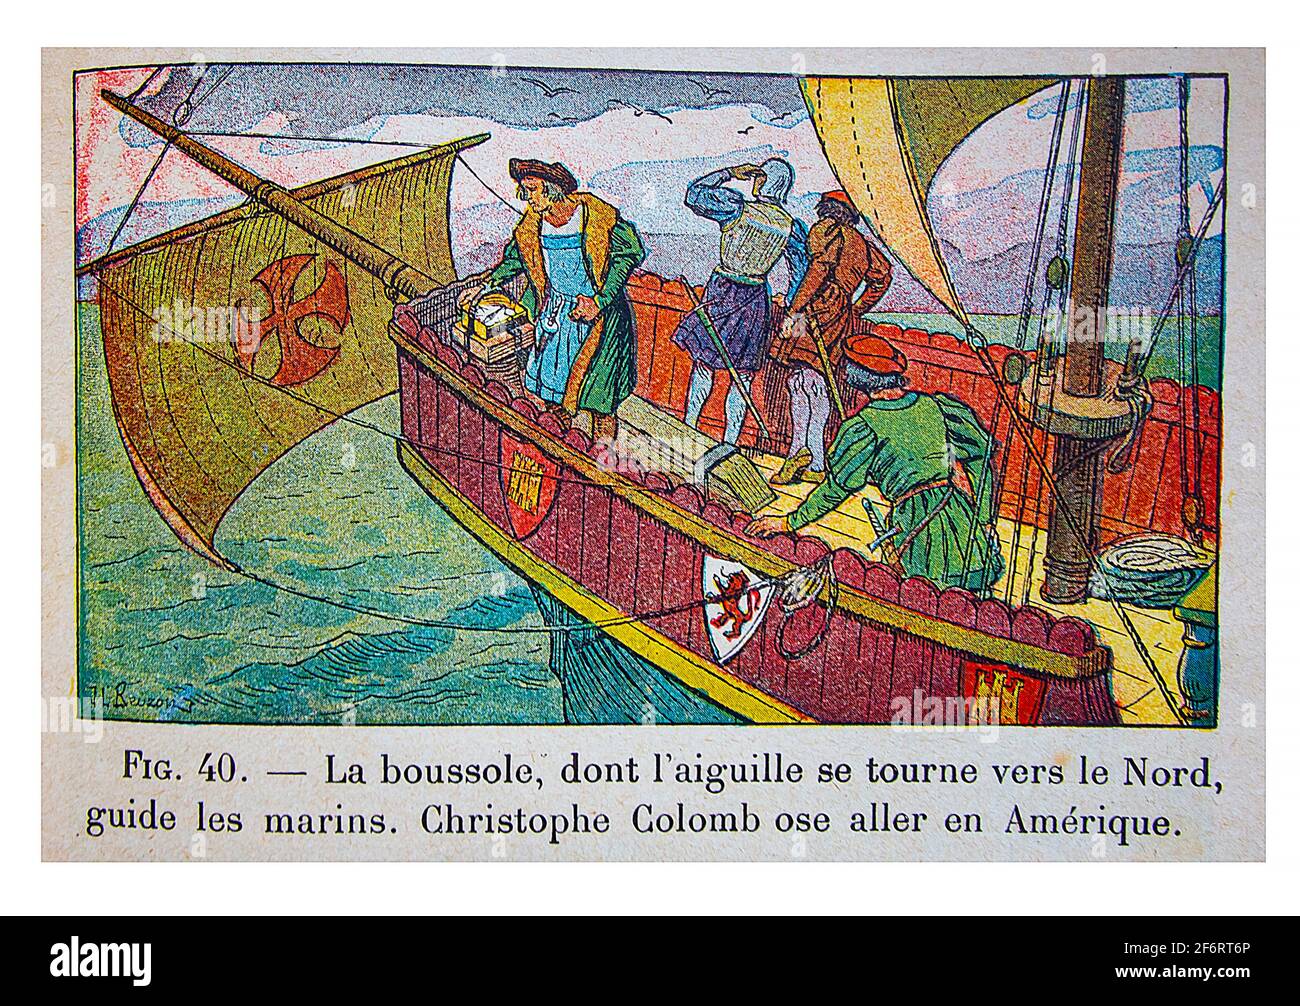 History,   Christopher Columbus, Histoire de France , Cours Elémentaire 1ere anné, Illustration by J & L Beuzon, 1933). Stock Photo